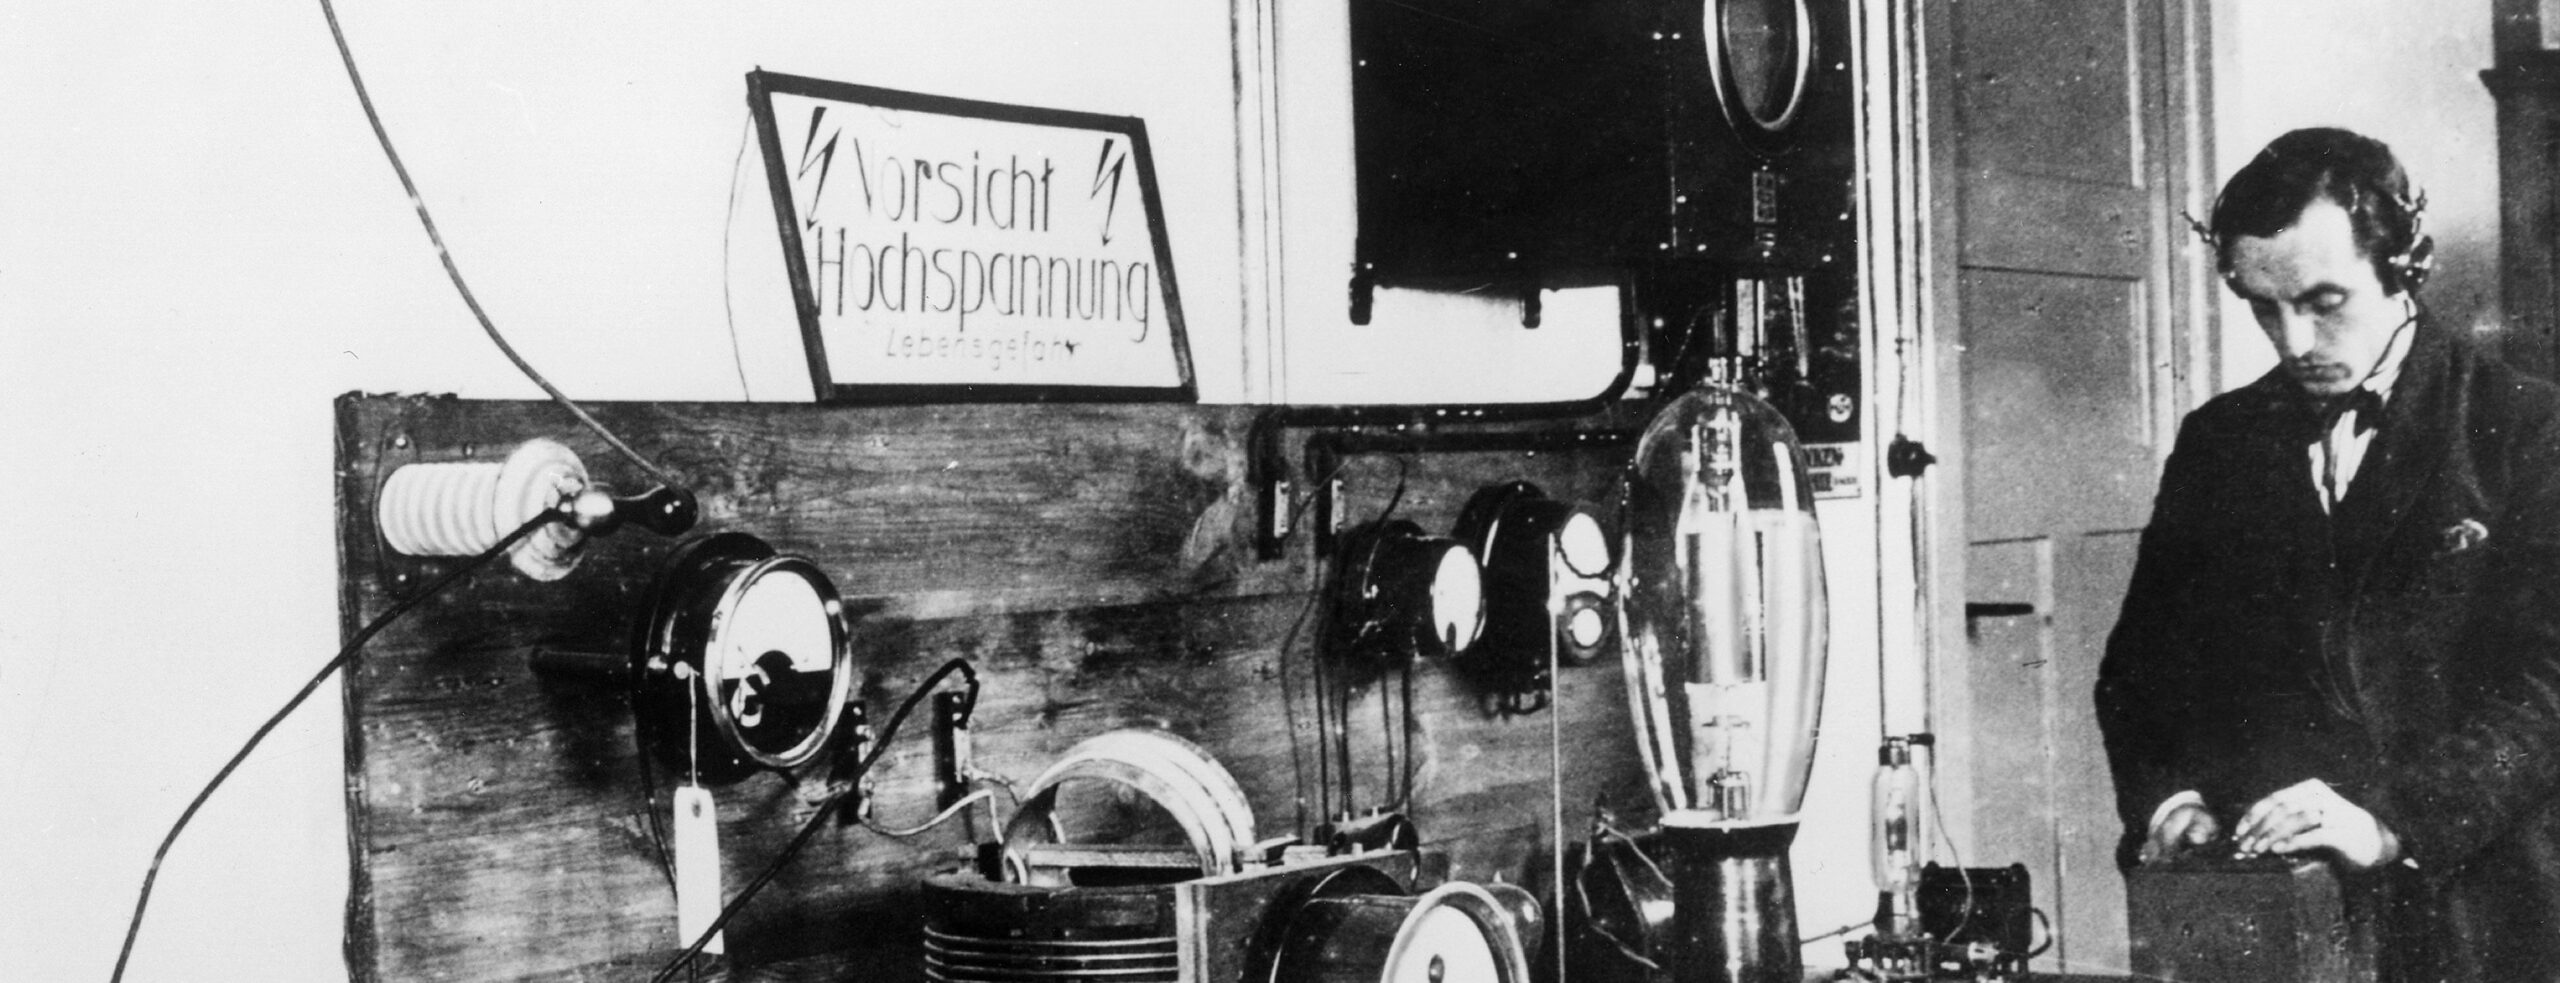 Voxhaus Berlin: Senderaum des ersten Berliner Rundfunksenders, 1923. | Bildquelle: picture alliance/ullstein bild